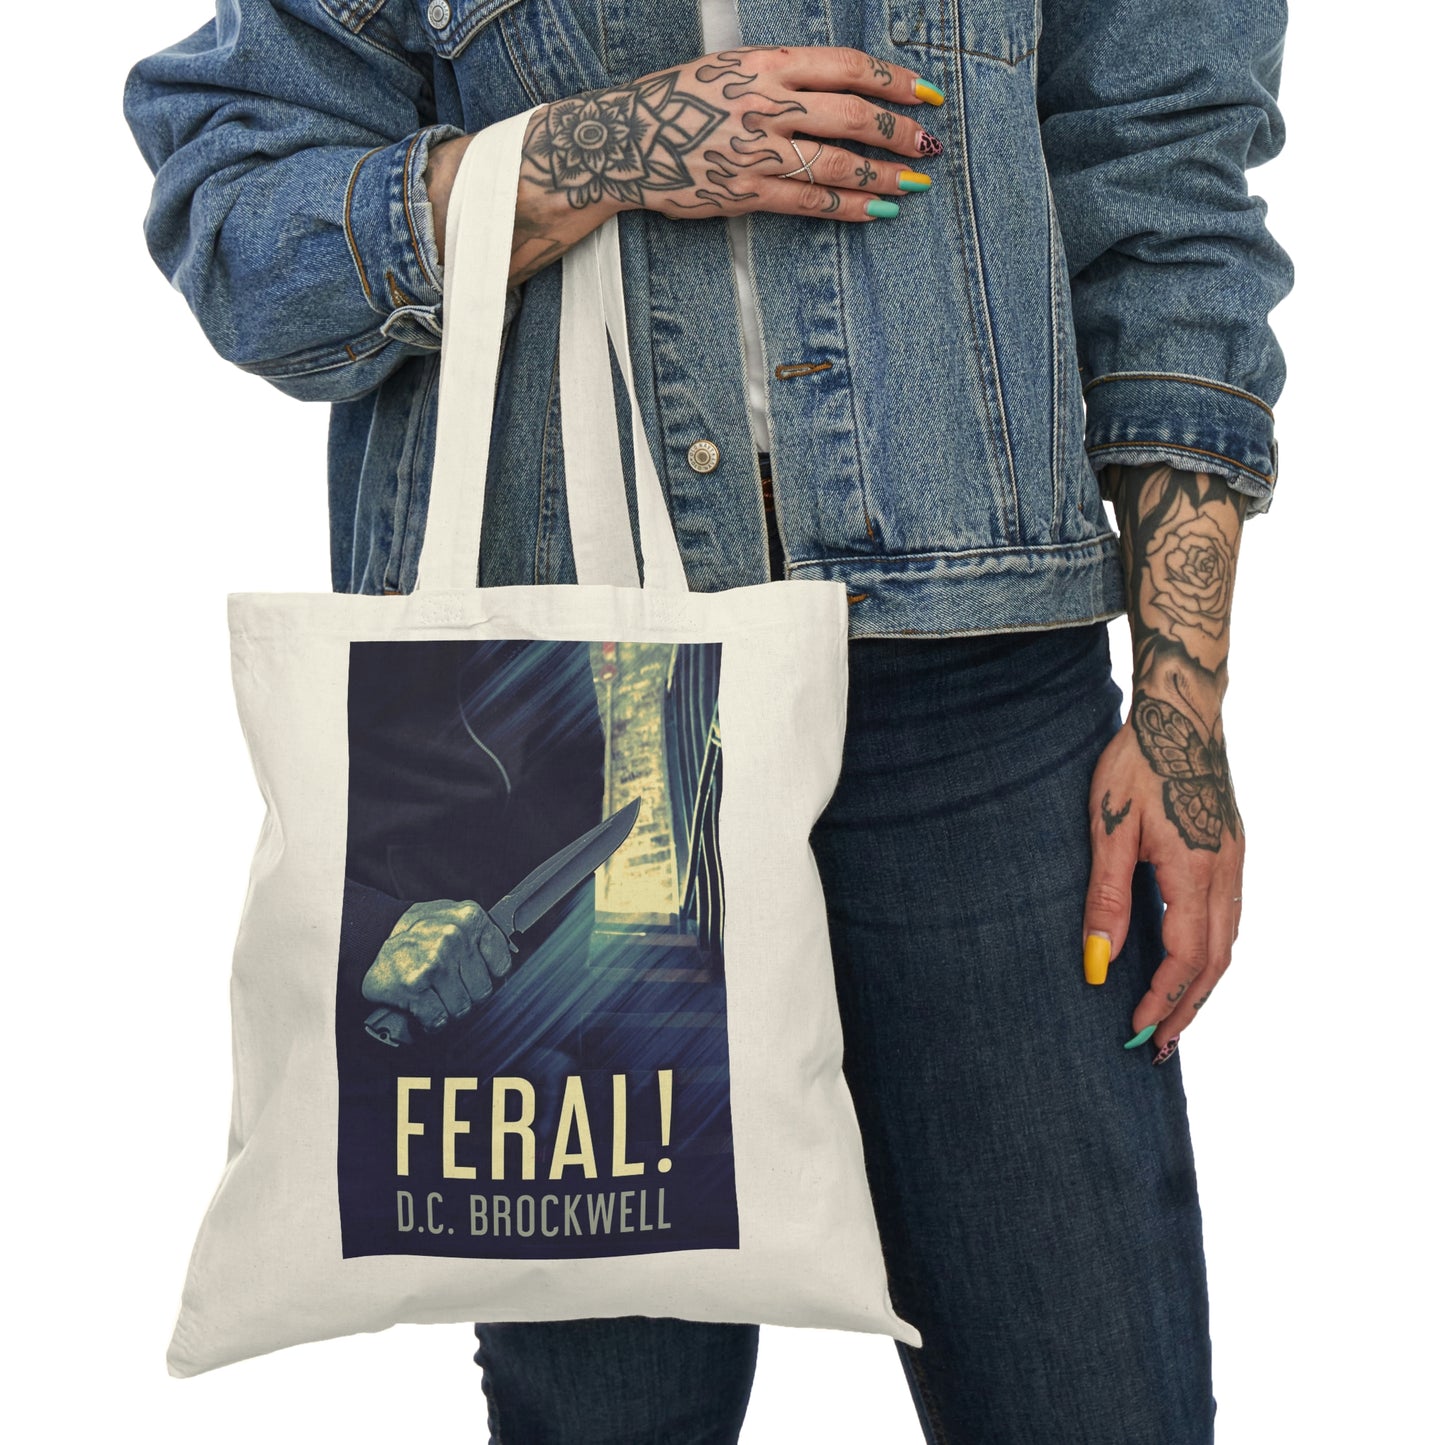 Feral! - Natural Tote Bag